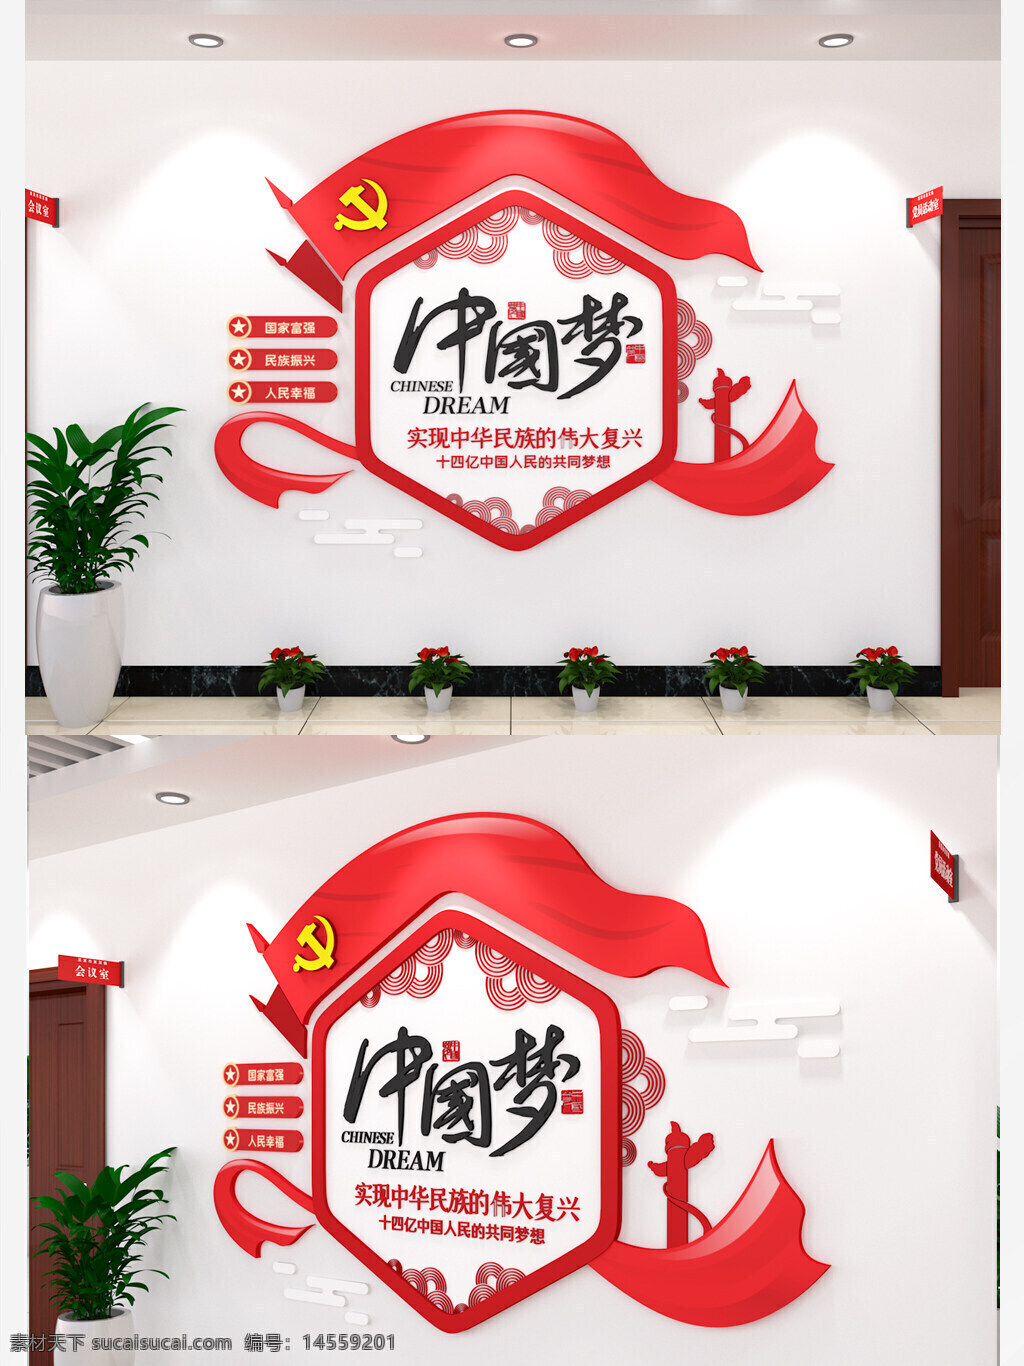 中国梦党建文化墙元素内容形式立体3d效果 中国梦 党建 文化墙 元素内容 形式 立体3d效果